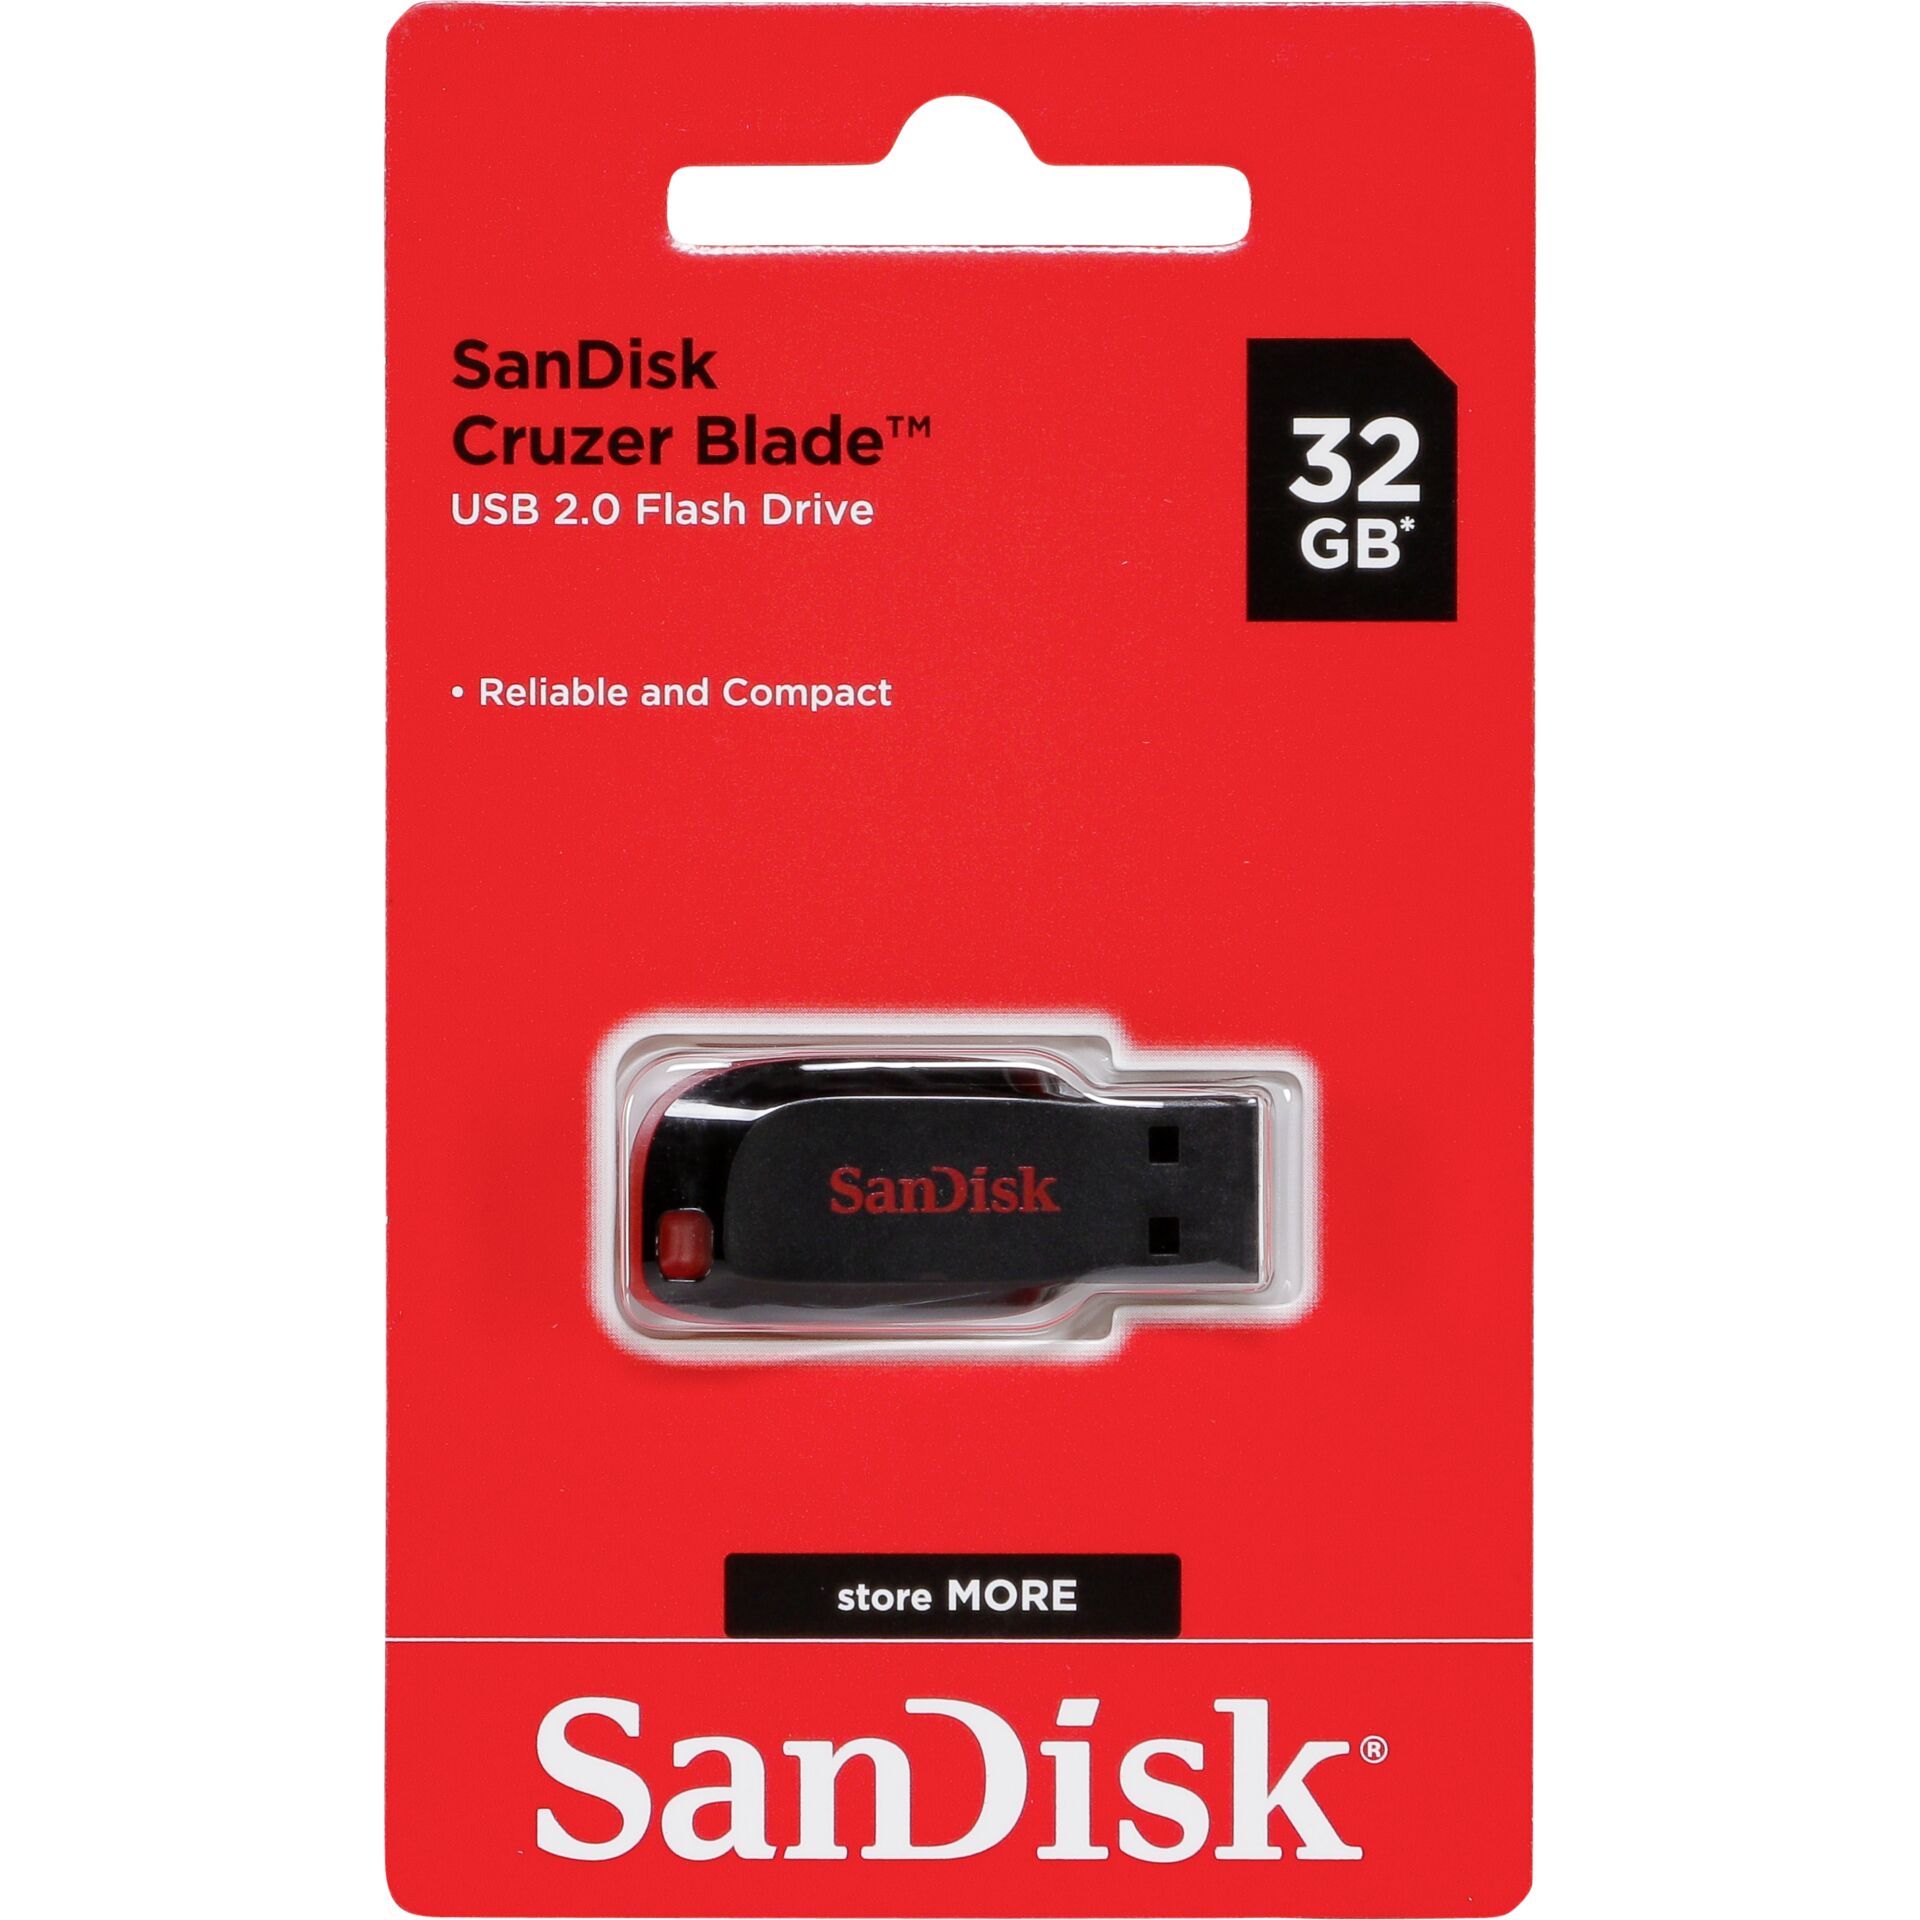 32 GB SanDisk Cruzer Blade USB 2.0 Stick 